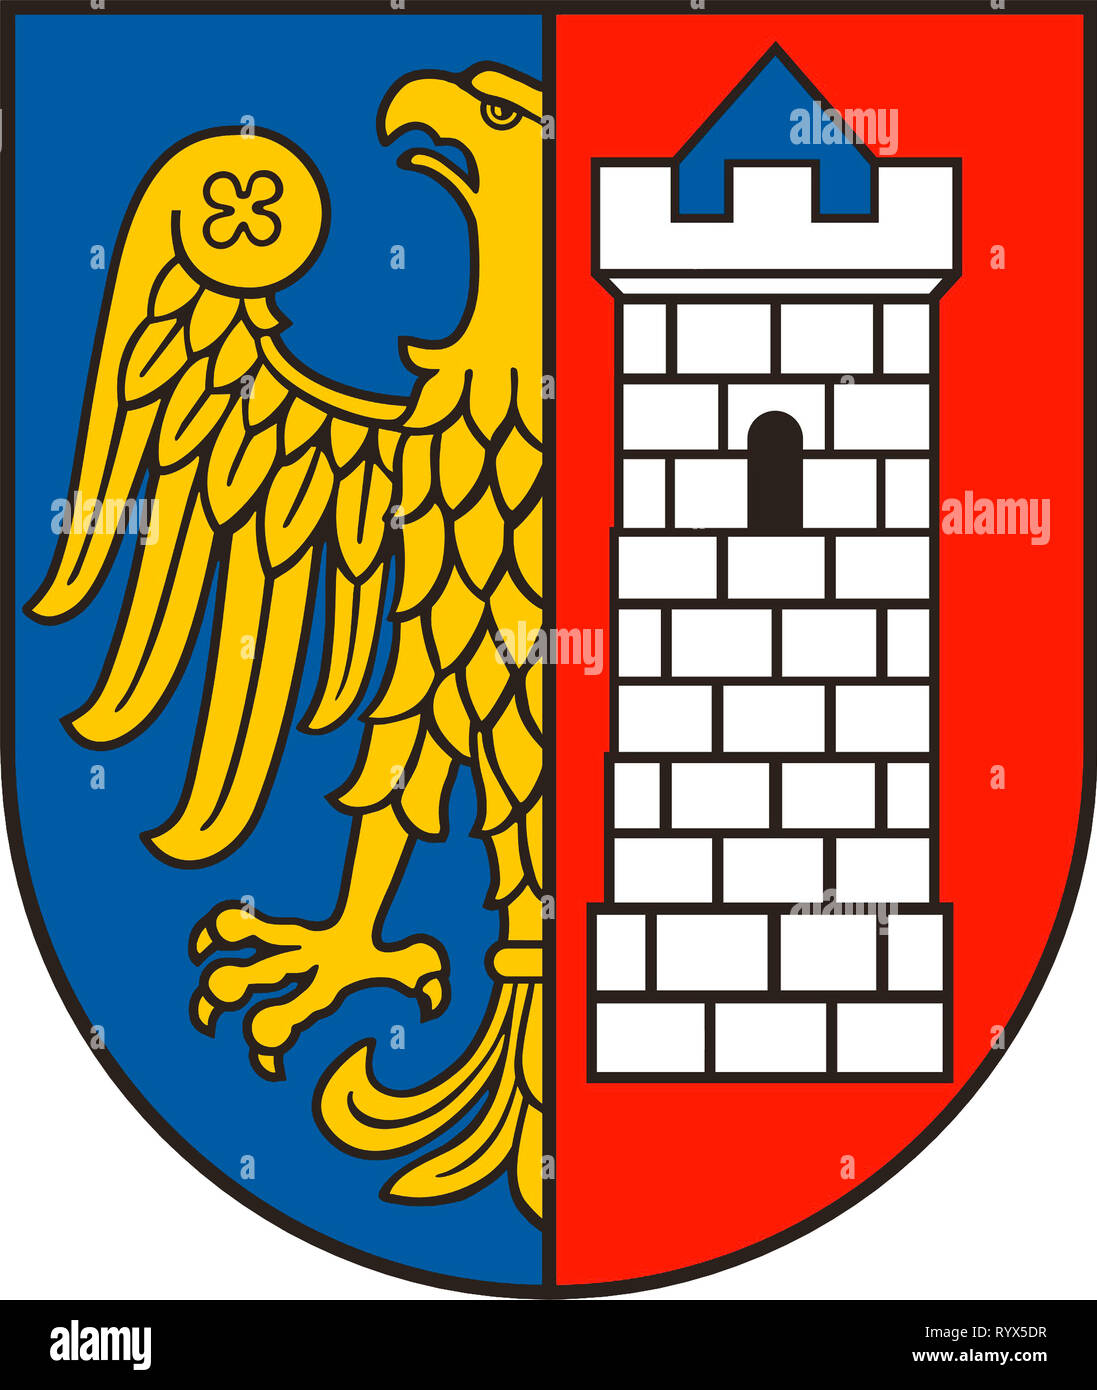 Wappen der polnischen Stadt Gliwice - Polen. Stockfoto